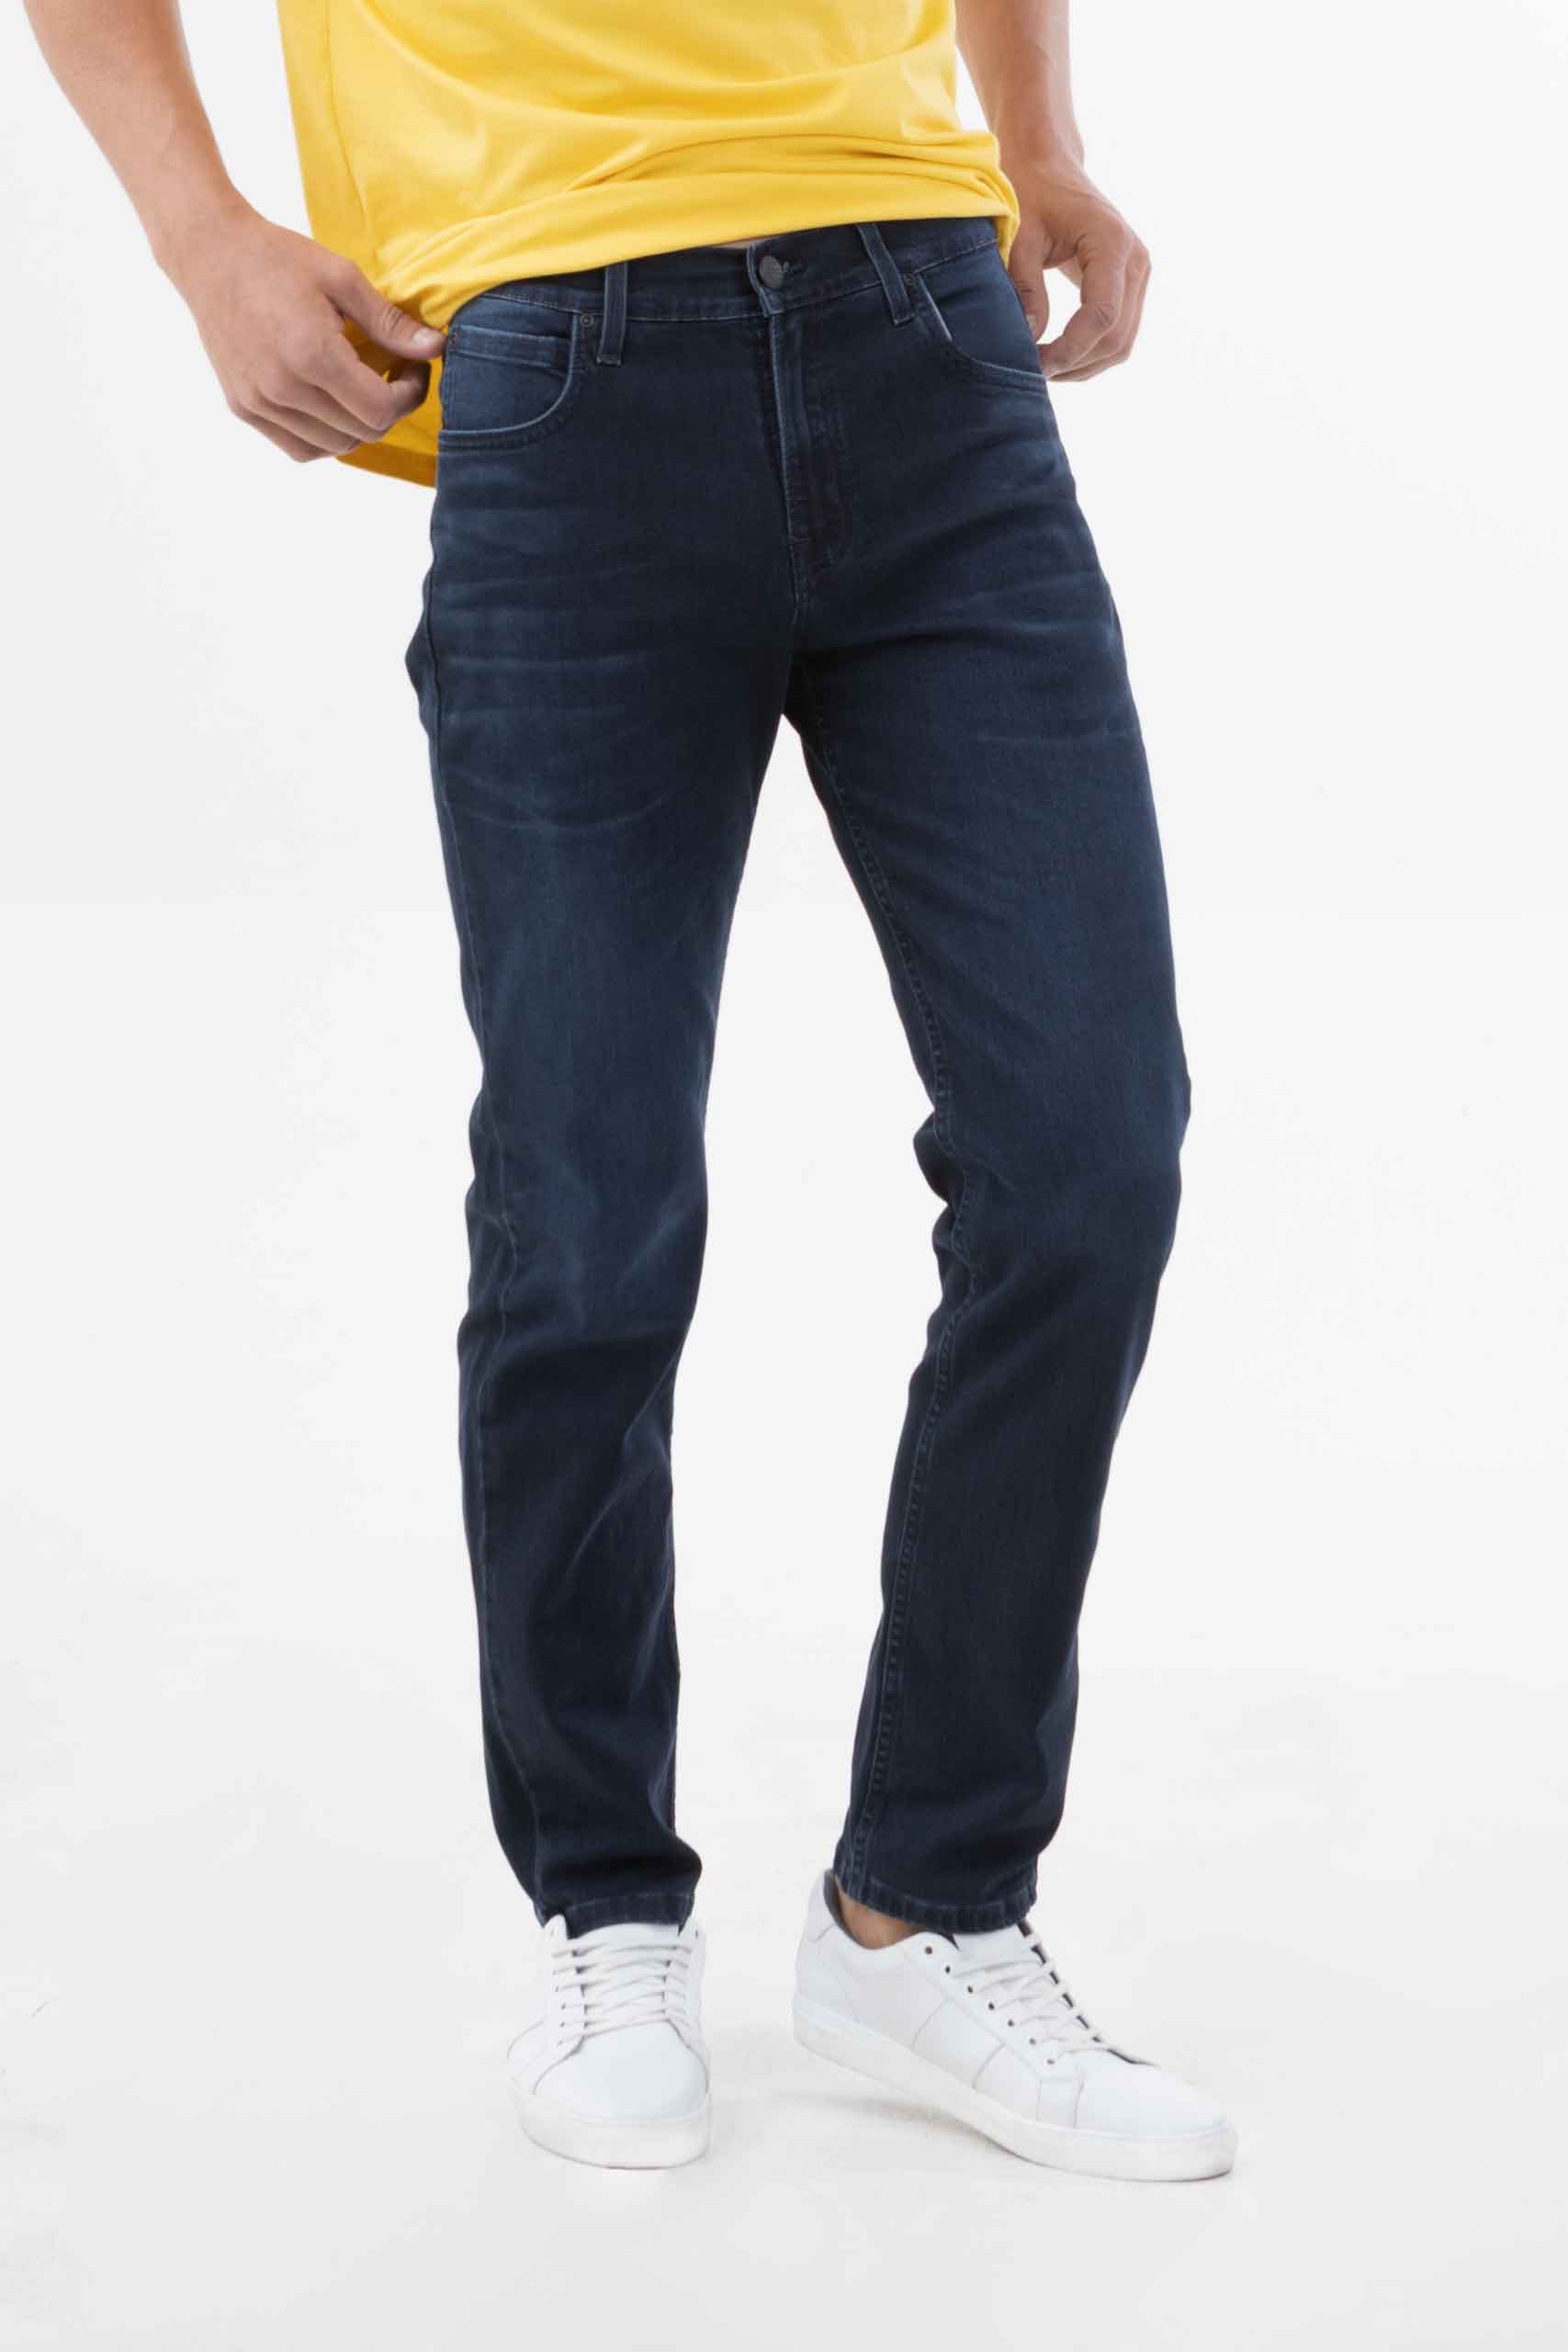 Vista frontal de pantalón de color petrol con bolsillos de marca lee